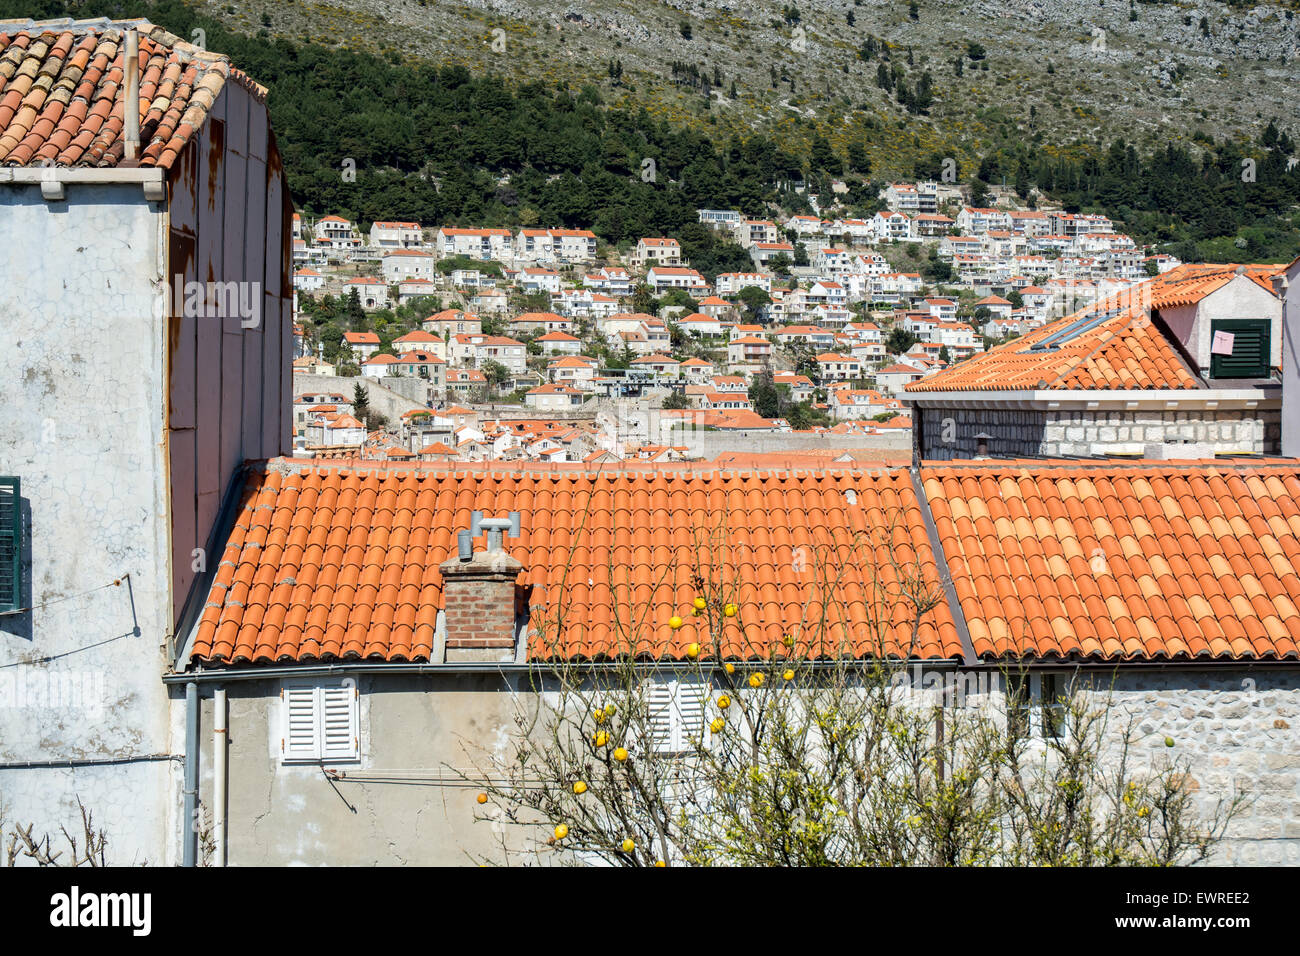 Toits de tuiles colorées de bâtiments en vieille ville avec d'autres édifices de la ville en arrière-plan, Dubrovnik, Croatie Banque D'Images